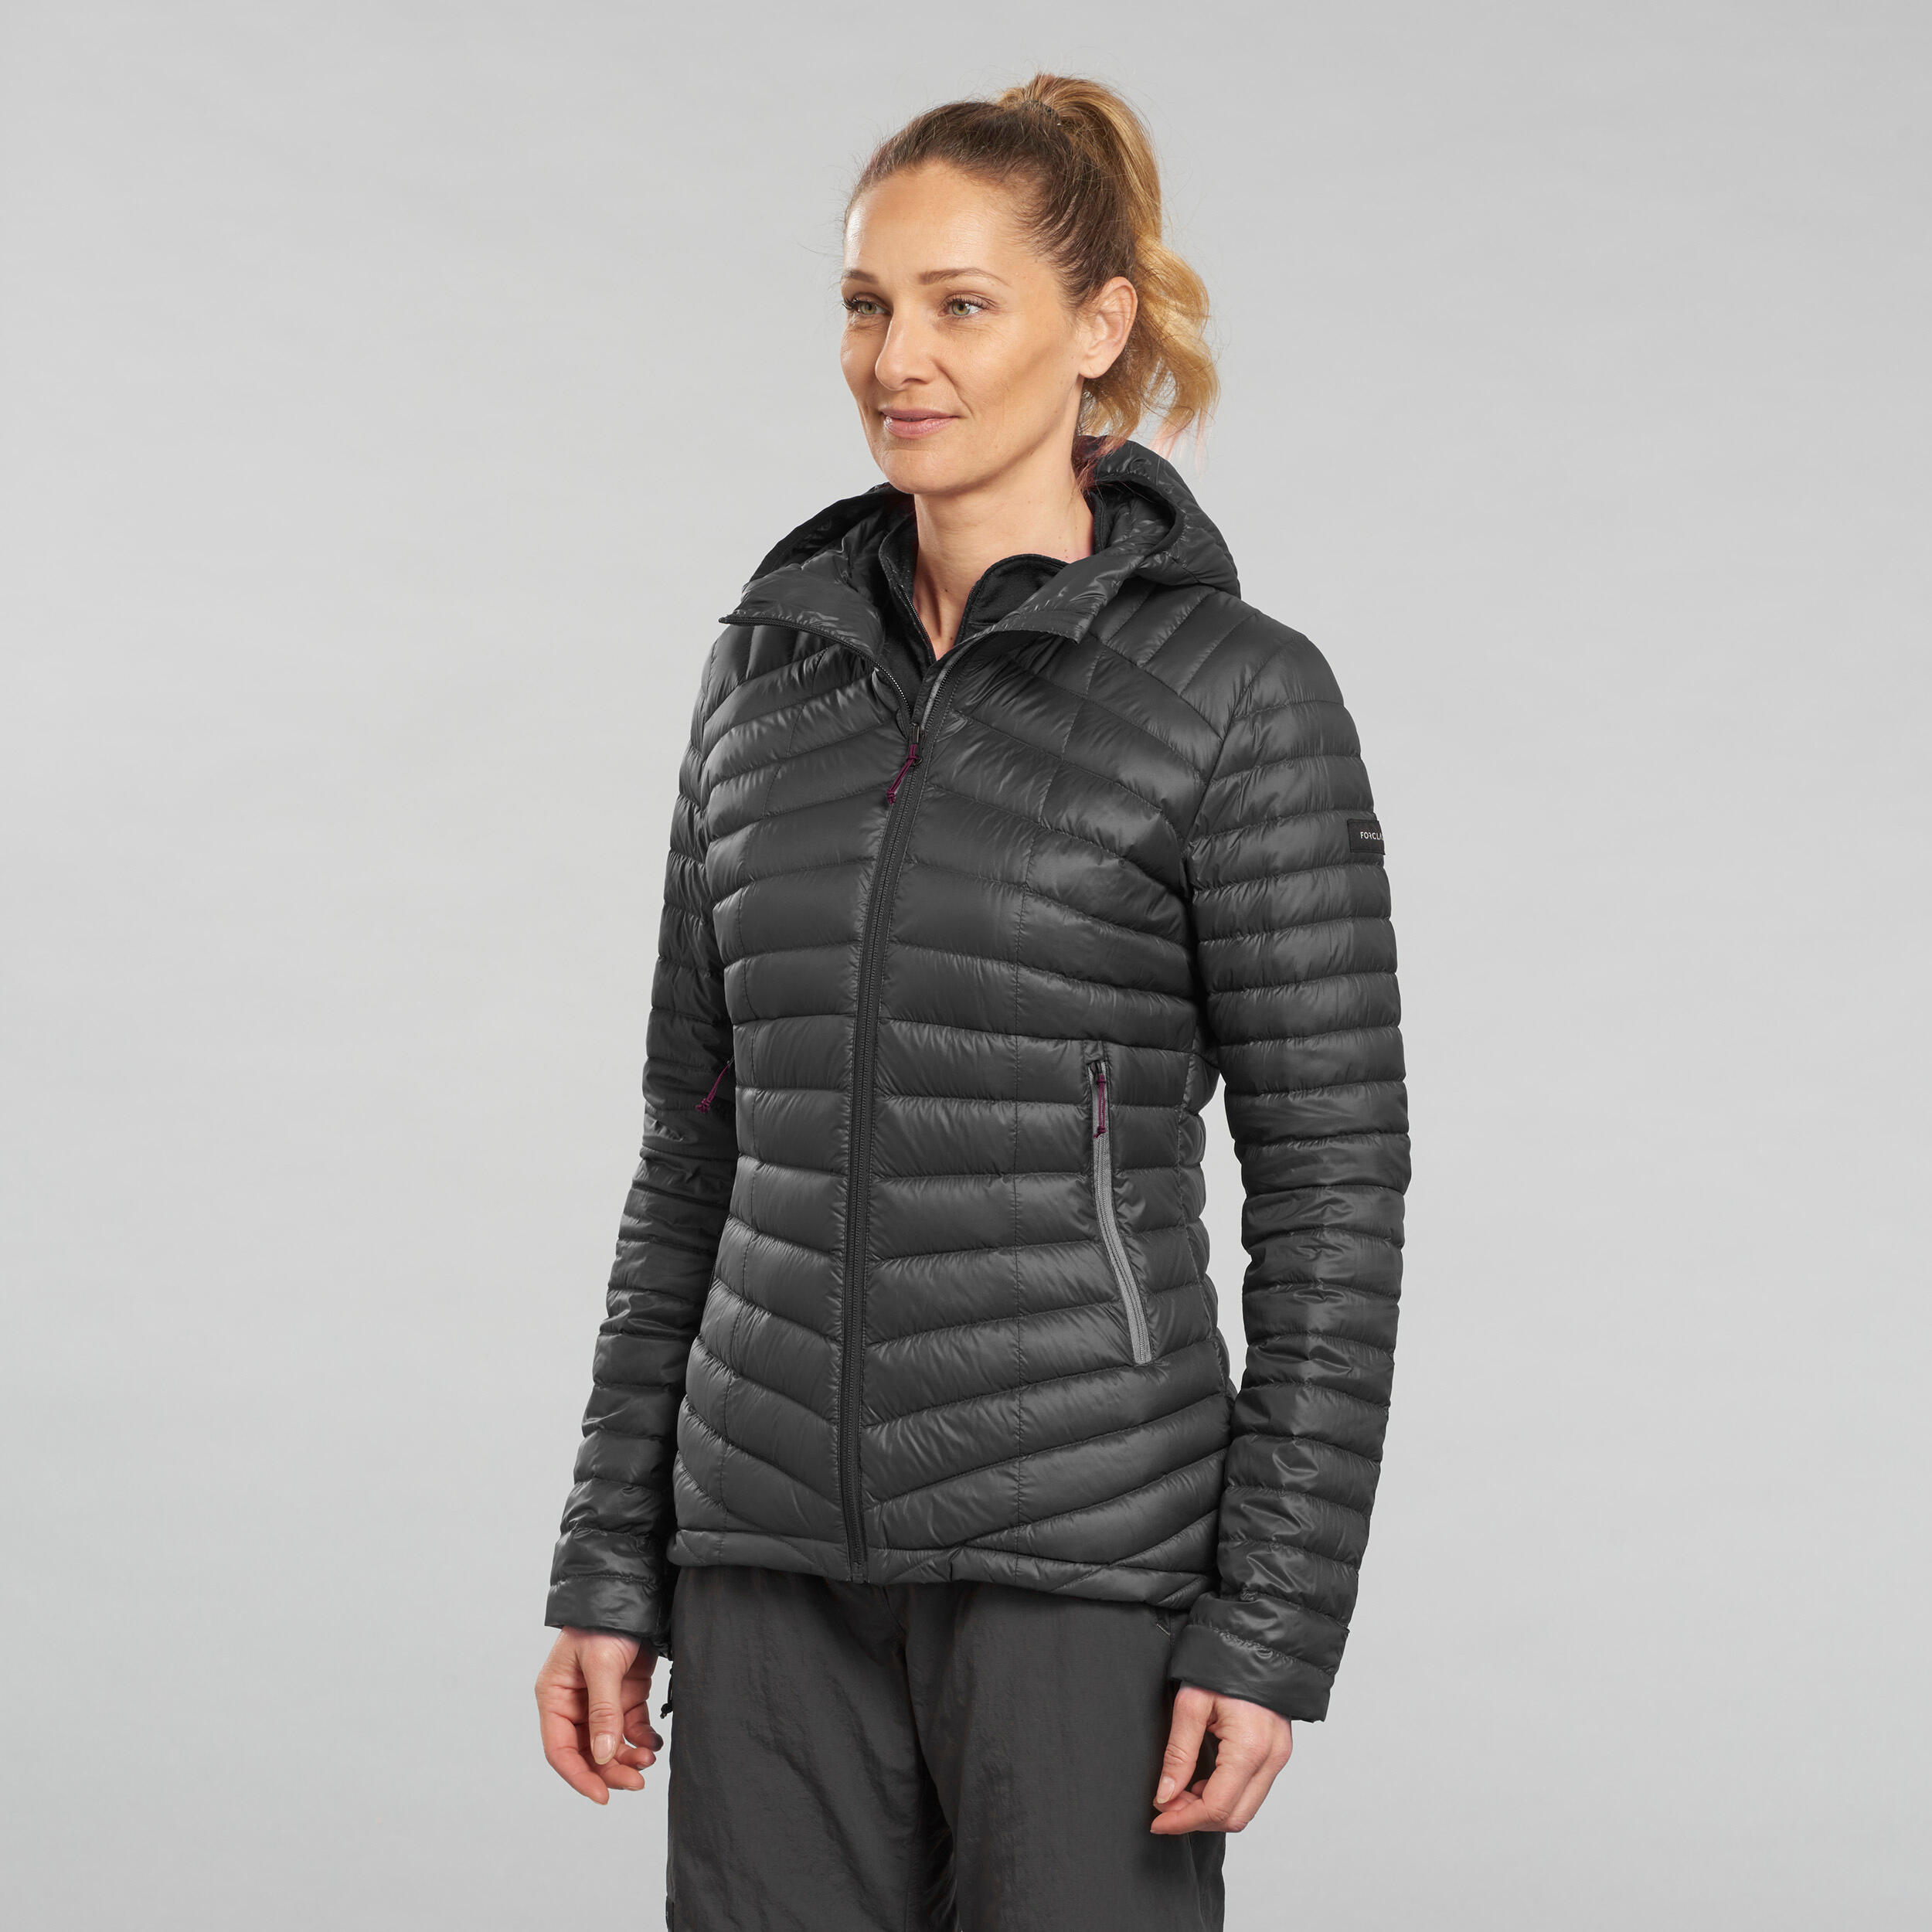 Women's Down Winter Jacket - MT 900 Black - Carbon grey - Forclaz